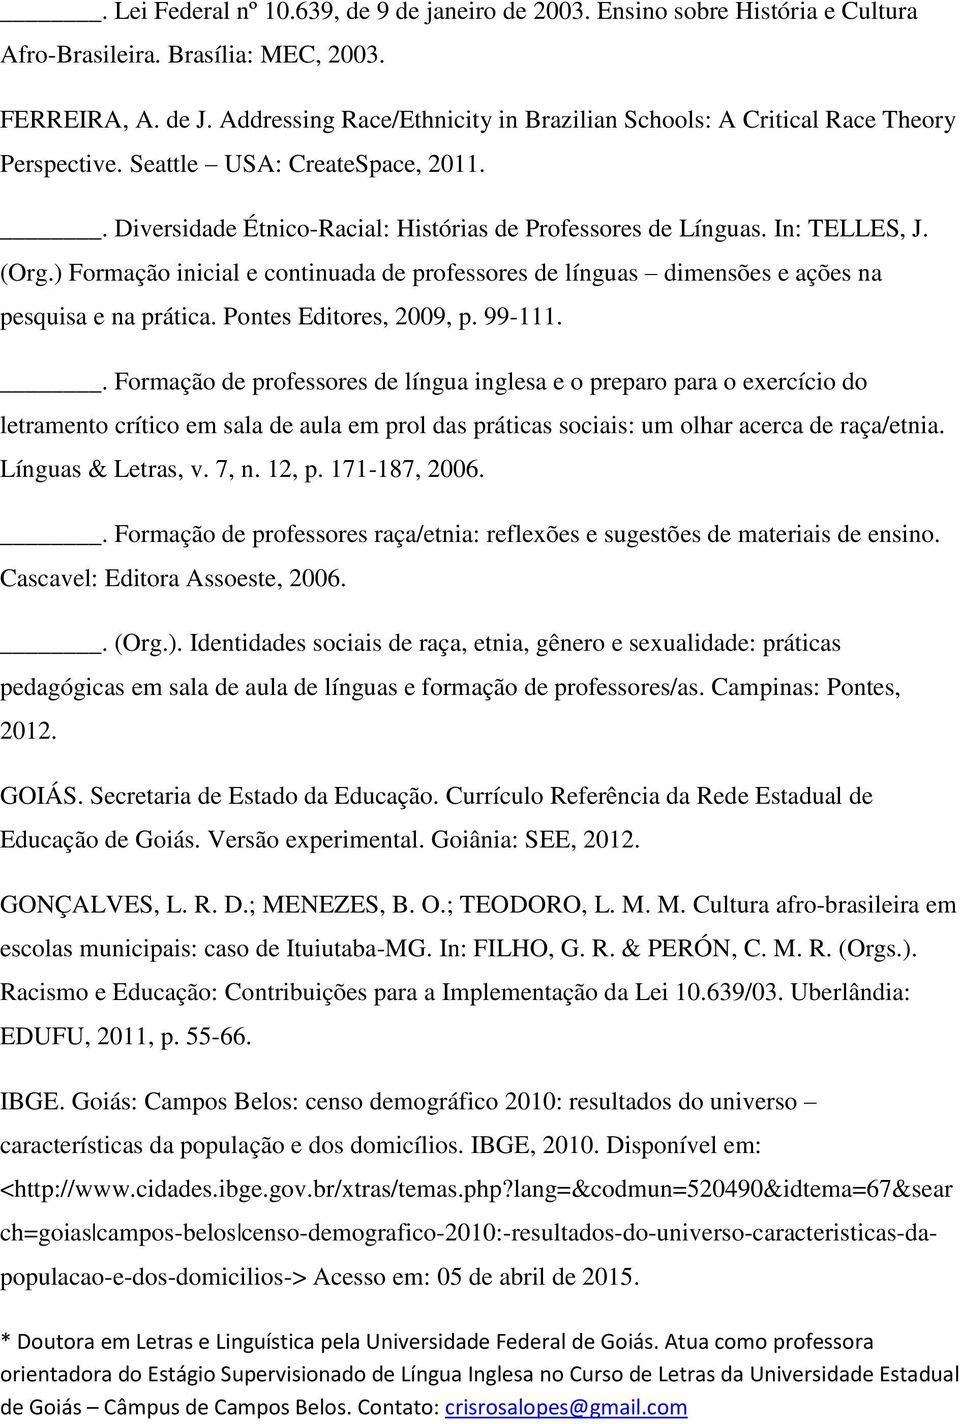 (Org.) Formação inicial e continuada de professores de línguas dimensões e ações na pesquisa e na prática. Pontes Editores, 2009, p. 99-111.